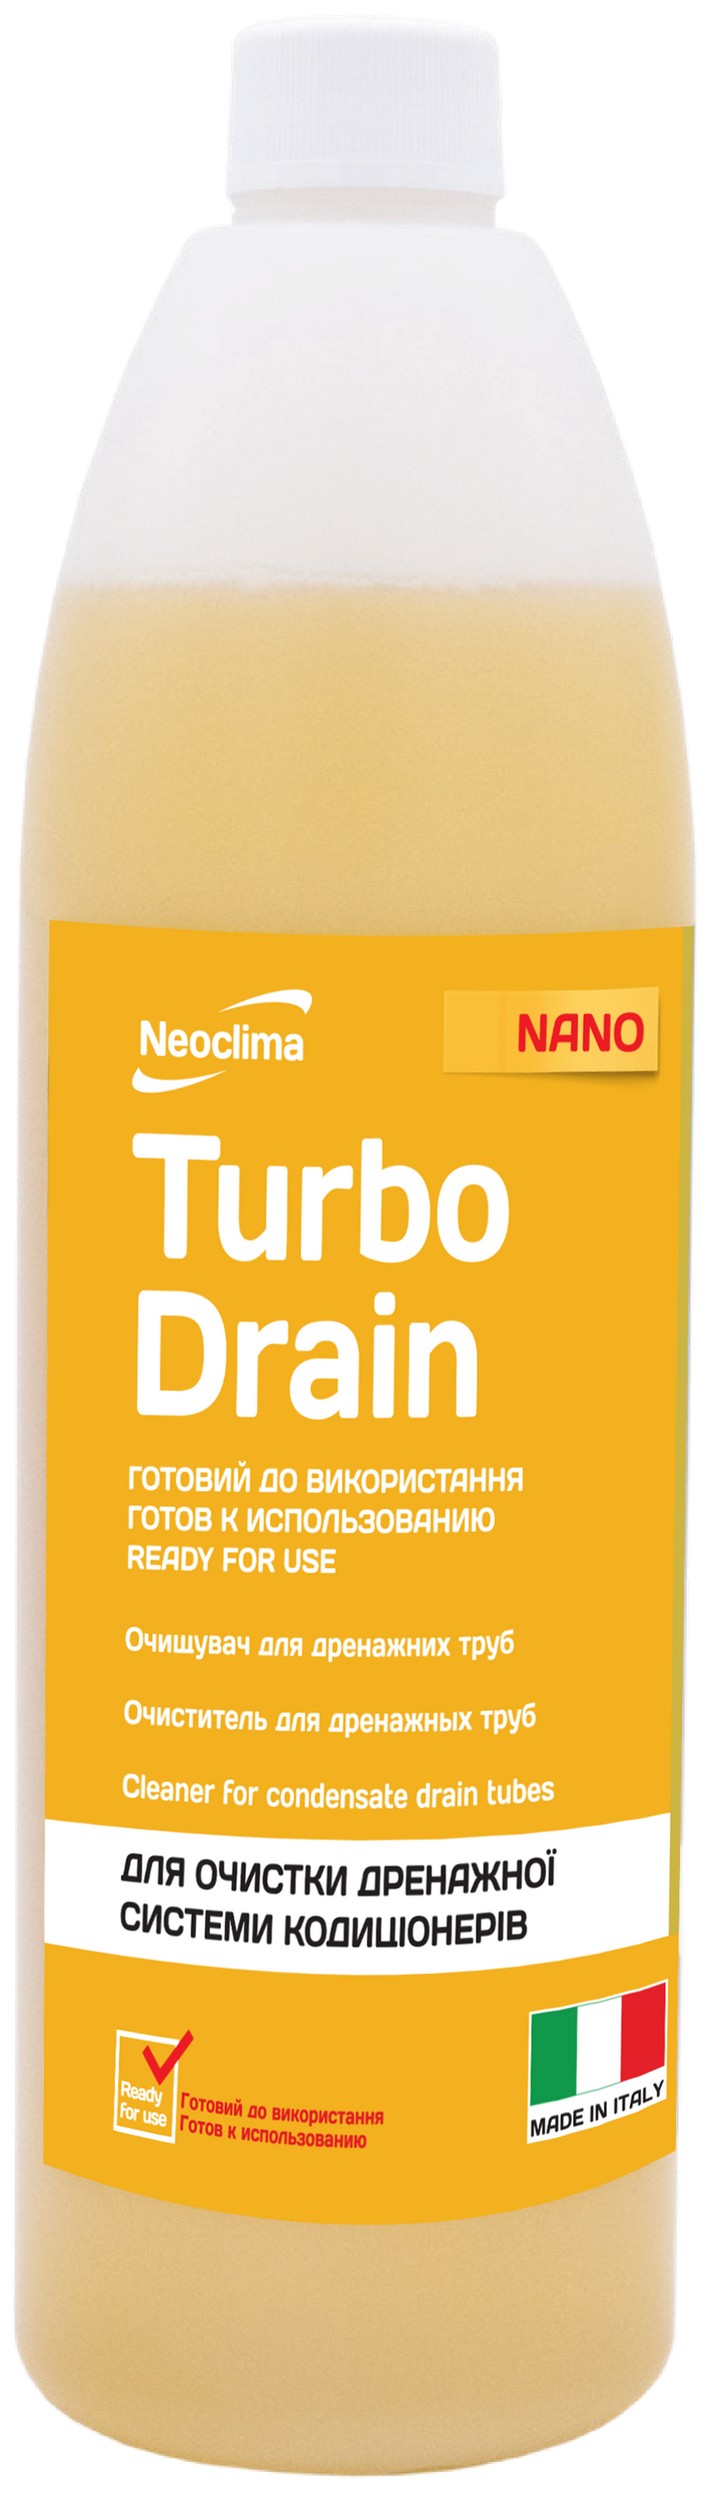 Очититель внутреннего блока Neoclima Тurbo Drain 1 л, готовый раствор в интернет-магазине, главное фото